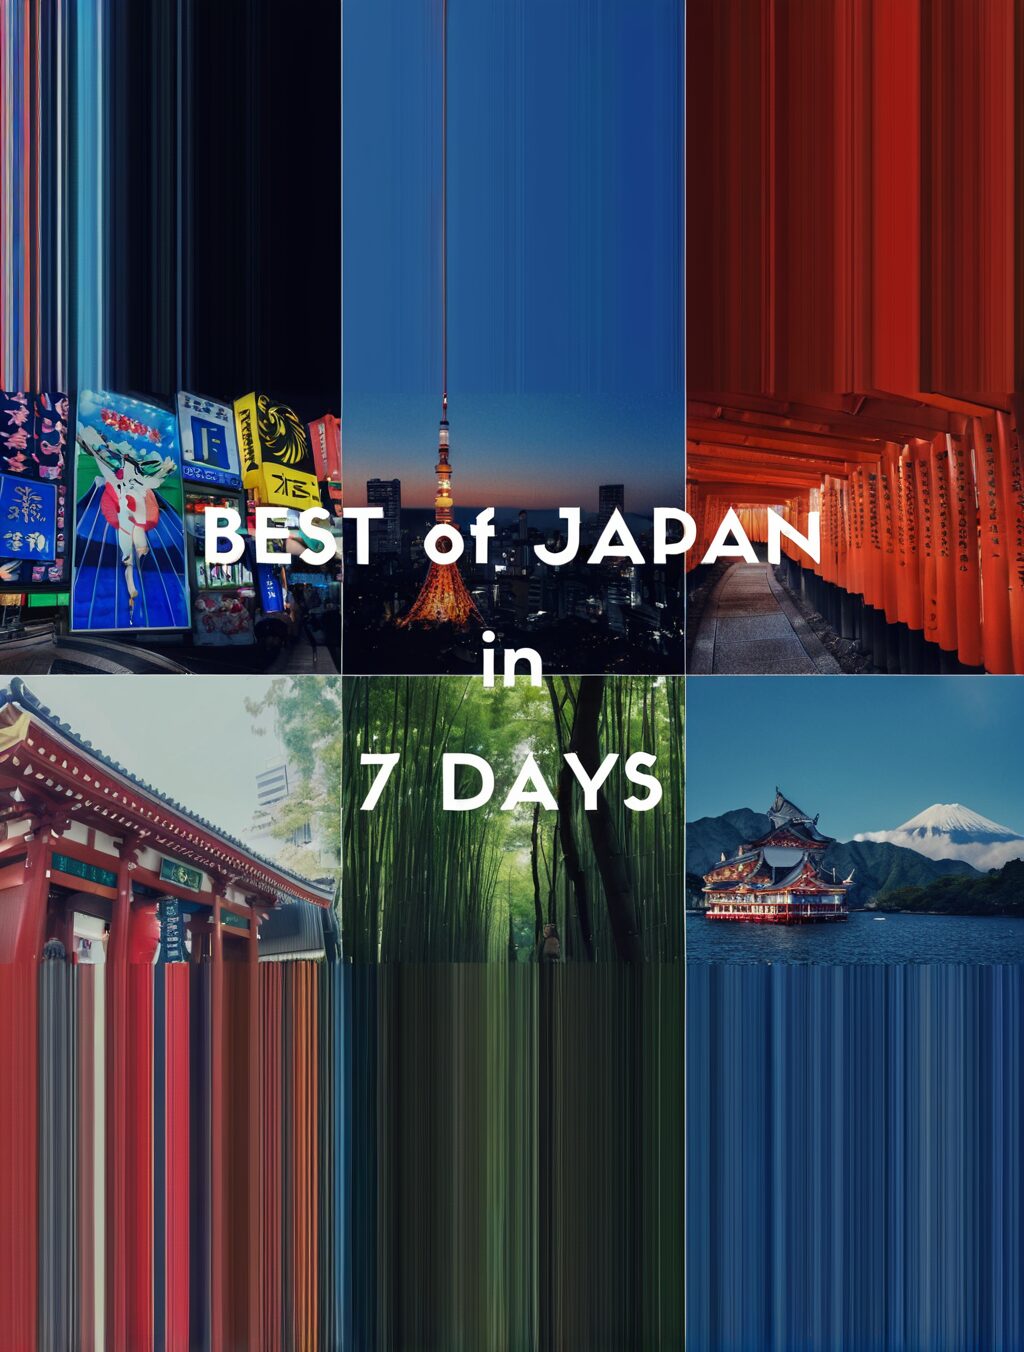 one week japan itinerary reddit